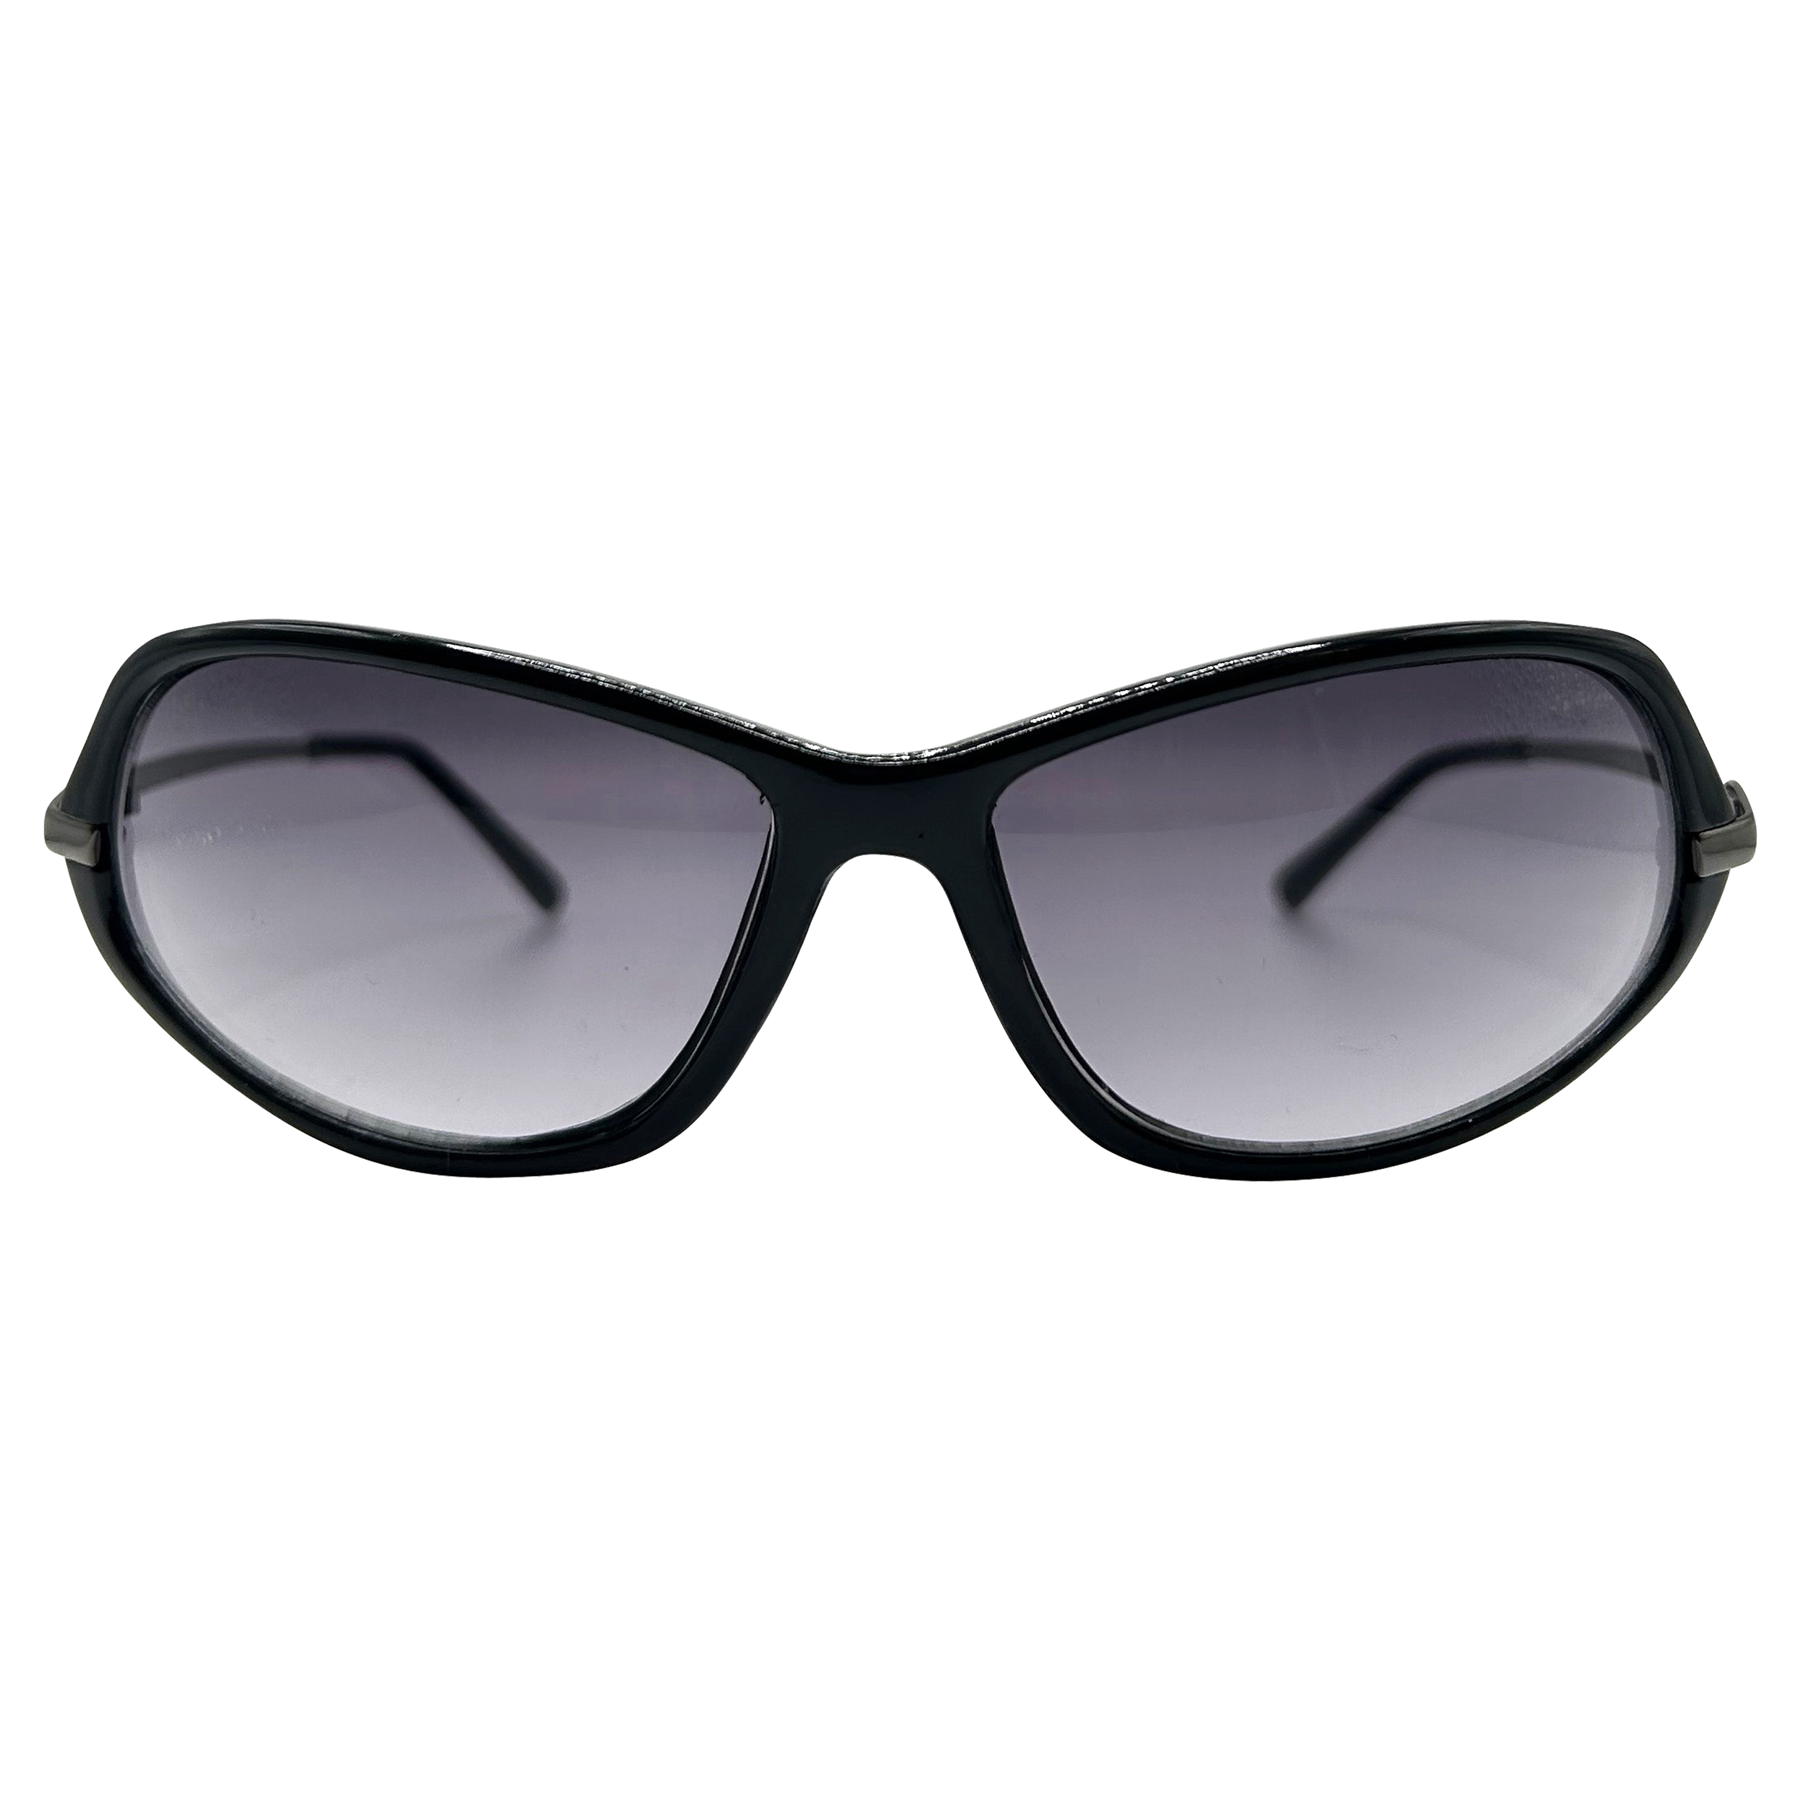 GINGER 90s Sunglasses